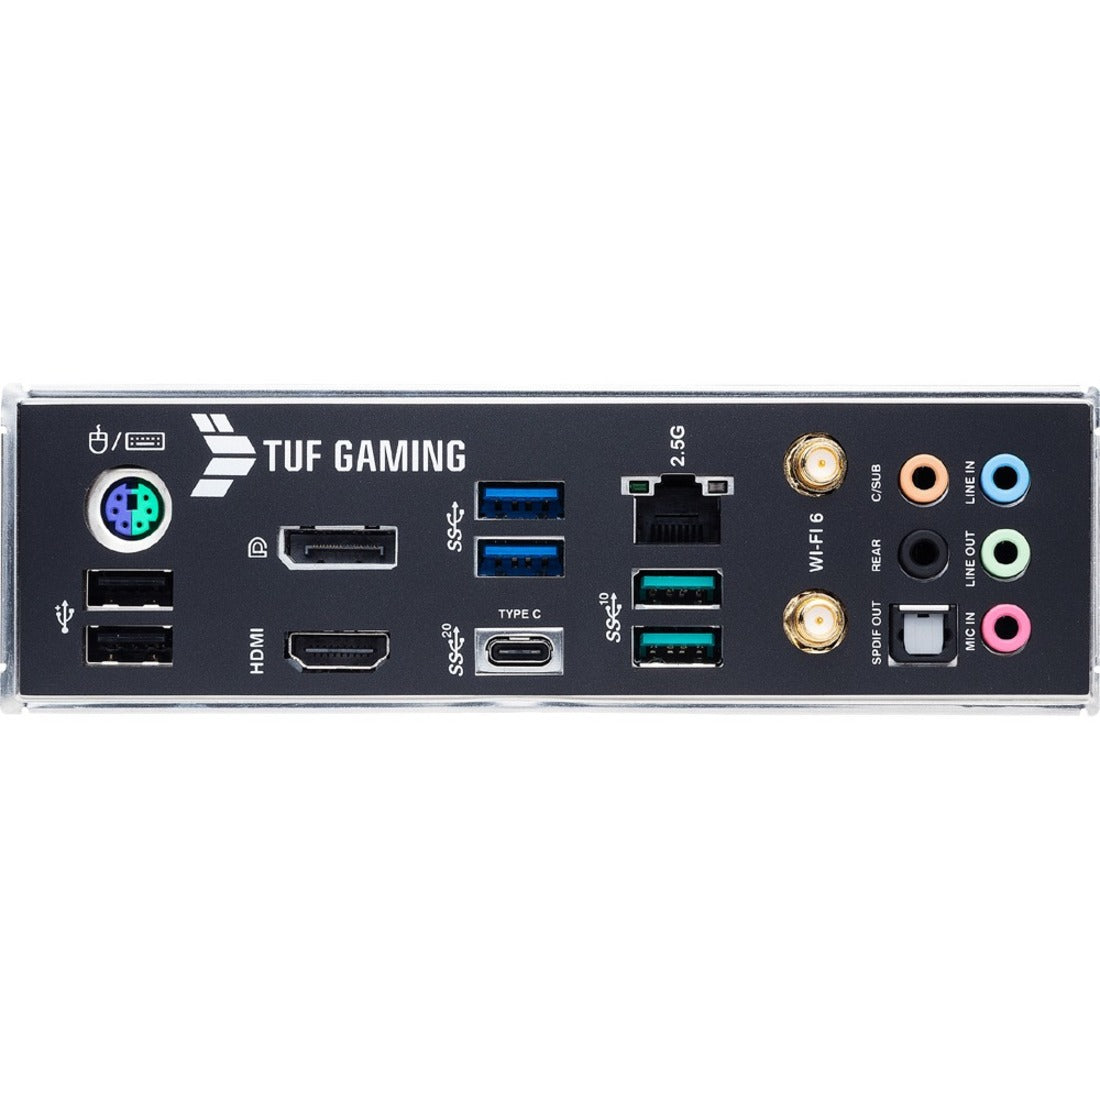 ASUS TUFGAMINGZ590PLUS TUF Gaming Z590-Plus/90MB16B0-M0AAY0 LGA 1200 ATX Gaming Motherboard, PCIe 4.0, 3xM.2/NVMe SSD, 14+2 Power Stages, USB 3.2 Gen 1 Front Panel Type-C, 2.5Gb LAN, Thunderbolt 4, Aura RGB Lighting